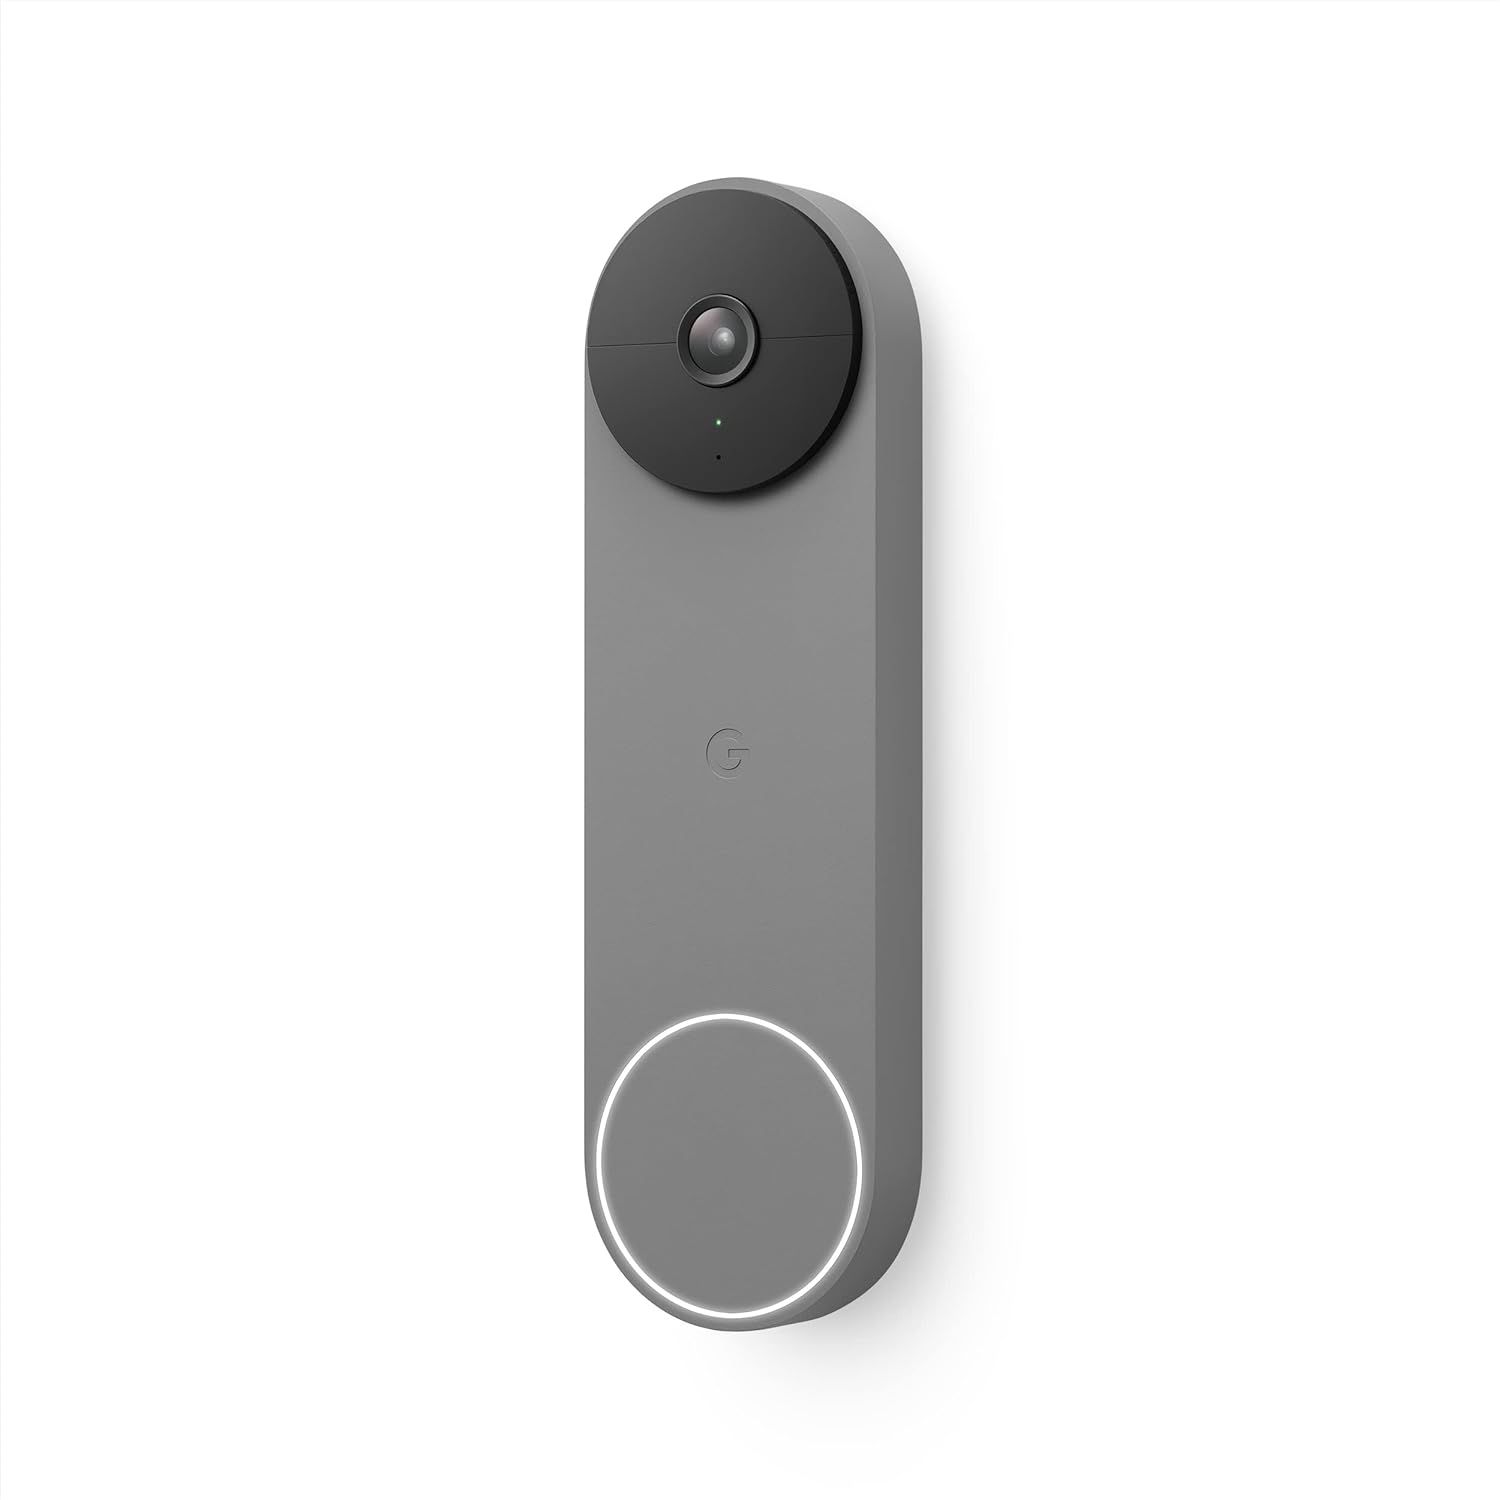 Google Nest Doorbell (Battery) - Wireless Doorbell Camera - Video Doorbell - Ash, 960x1280 | Amazon (US)